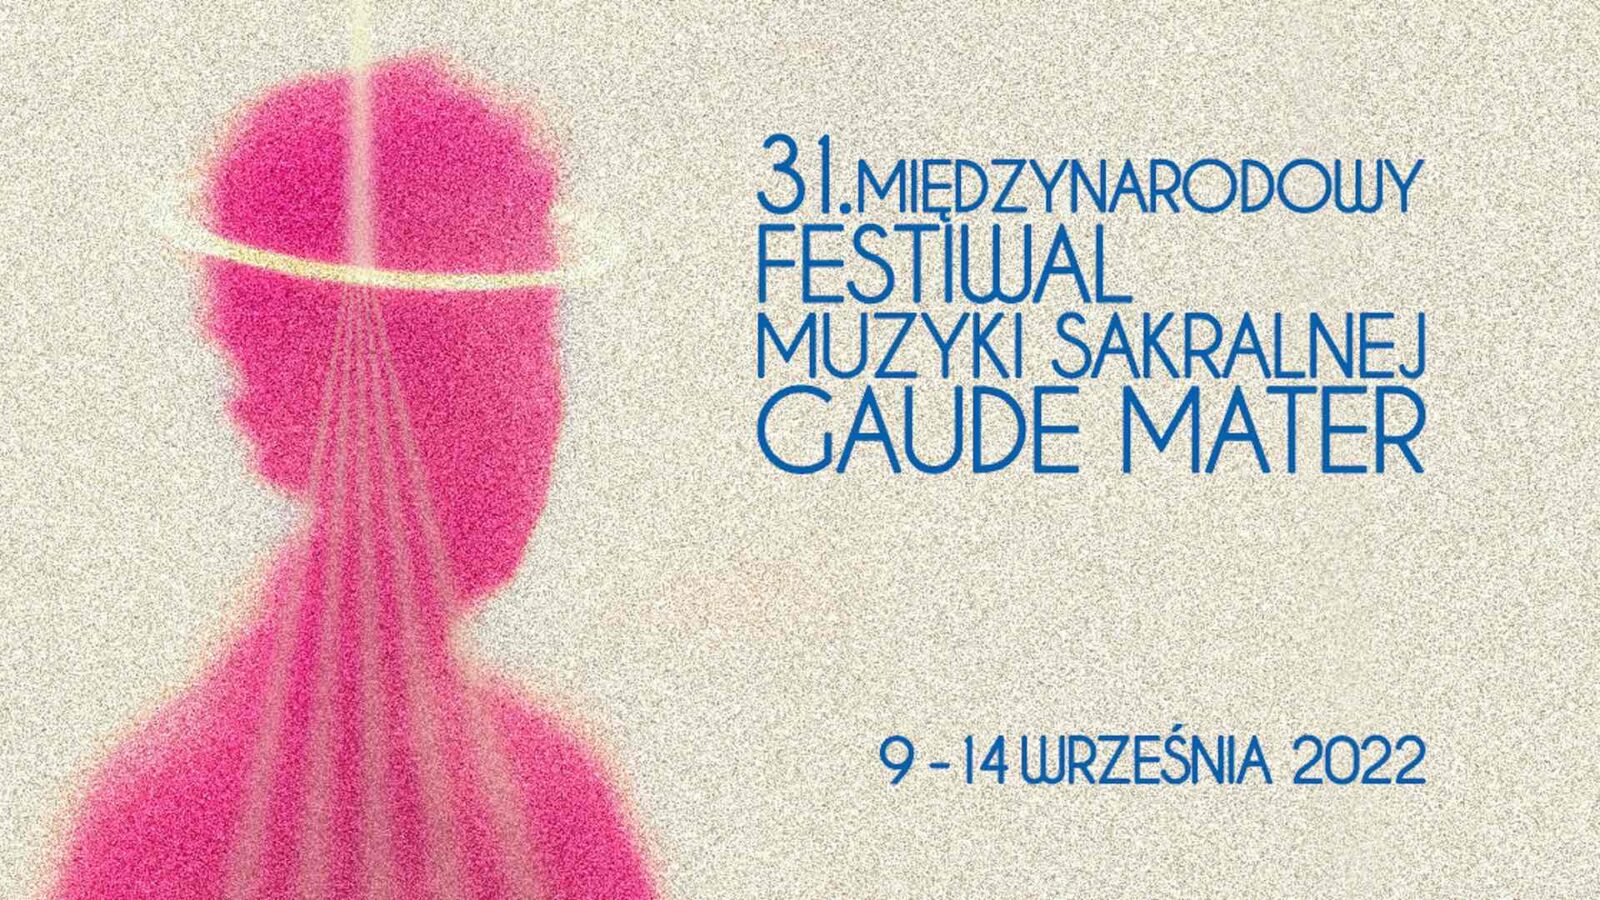 31. Międzynarodowy Festiwal Muzyki Sakralnej „Gaude Mater”. Koncerty odbędą się w Częstochowie i Wieluniu 4